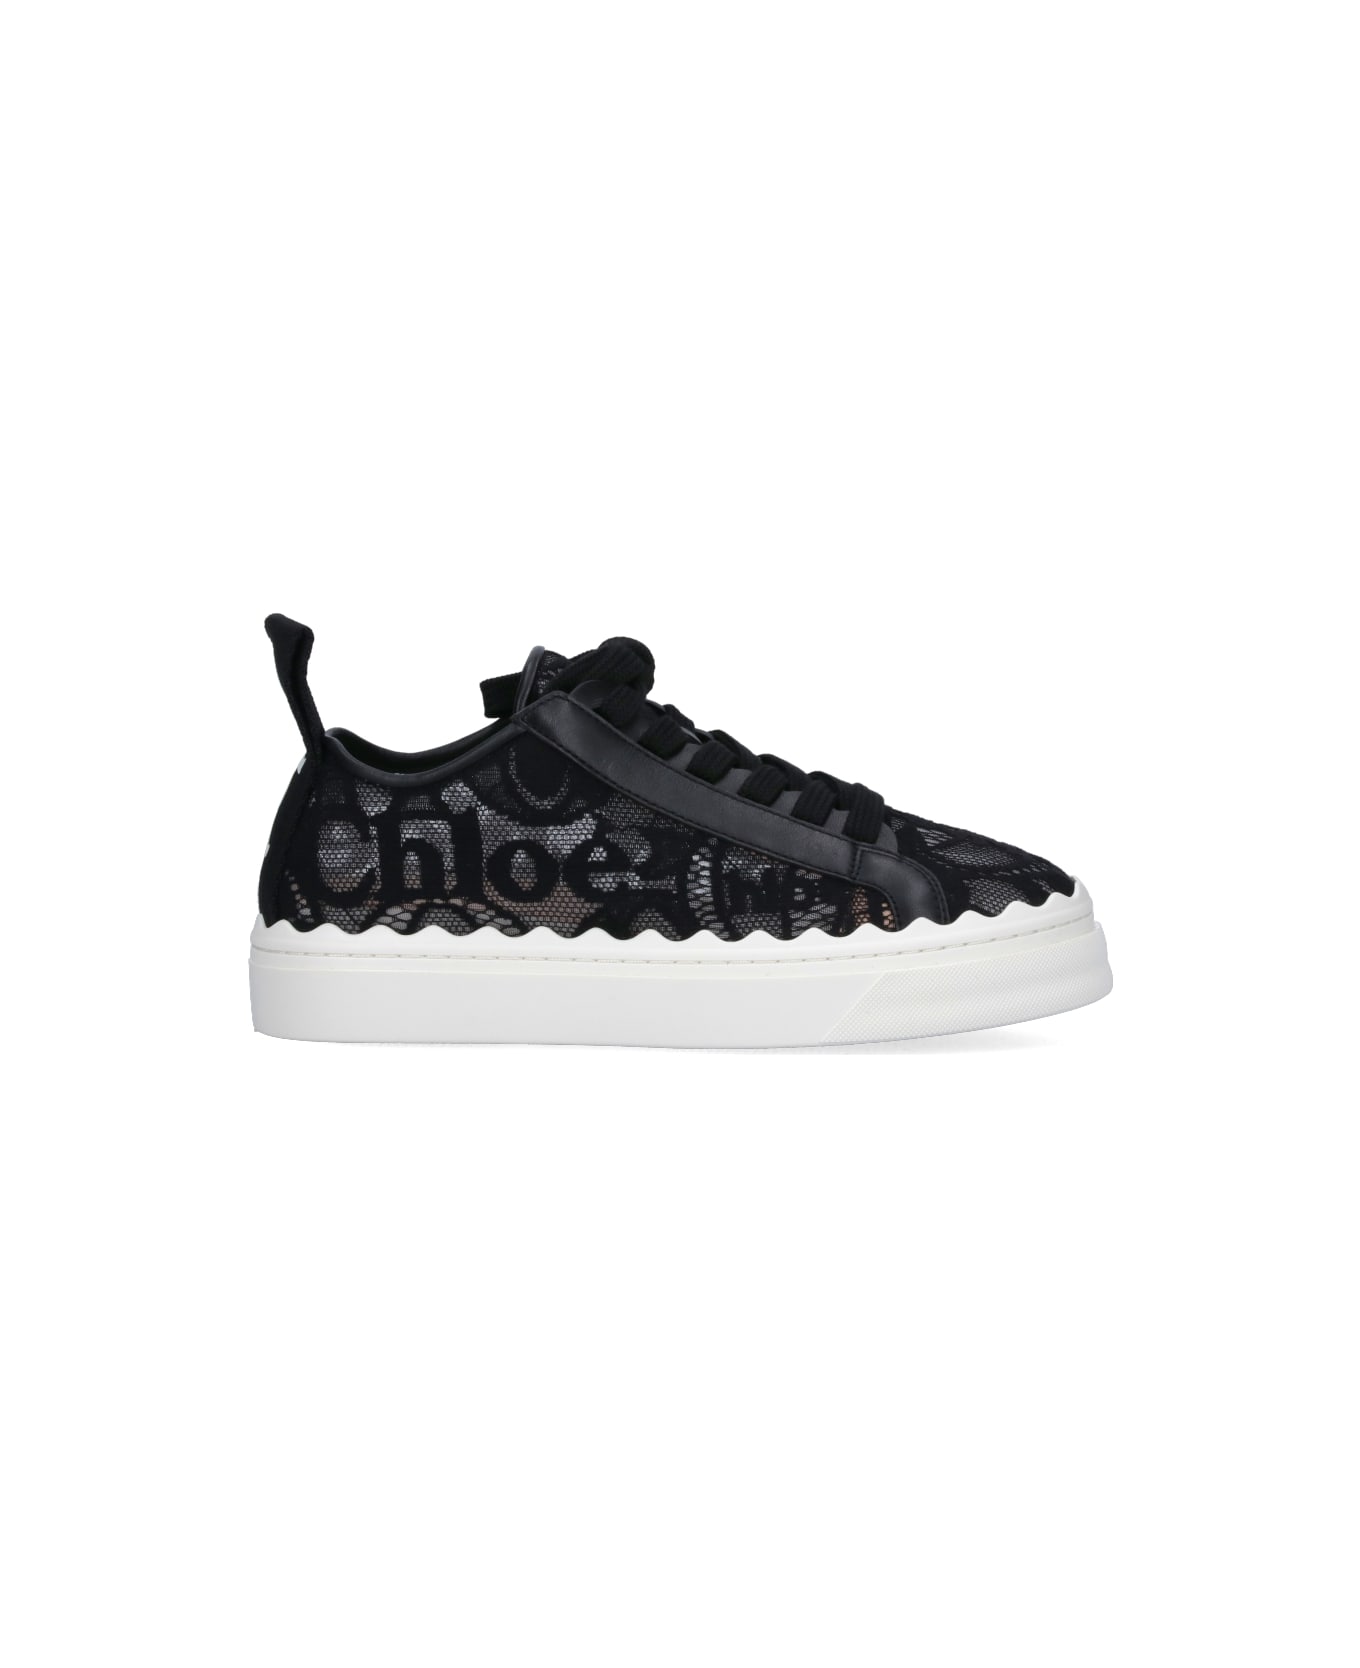 Chloé 'lauren' Sneakers - Black  